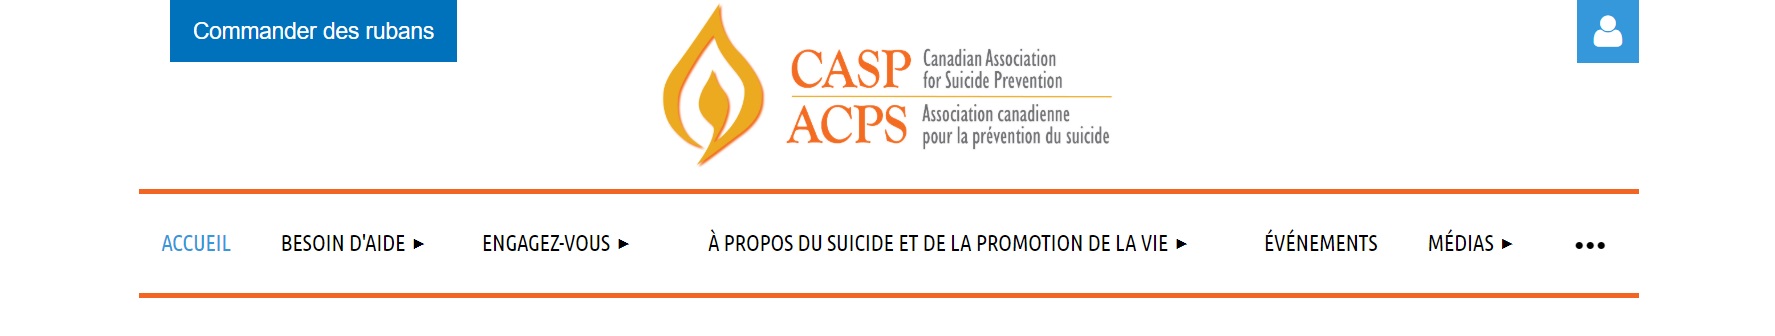 Association canadienne pour la prévention du suicide (ACPS)